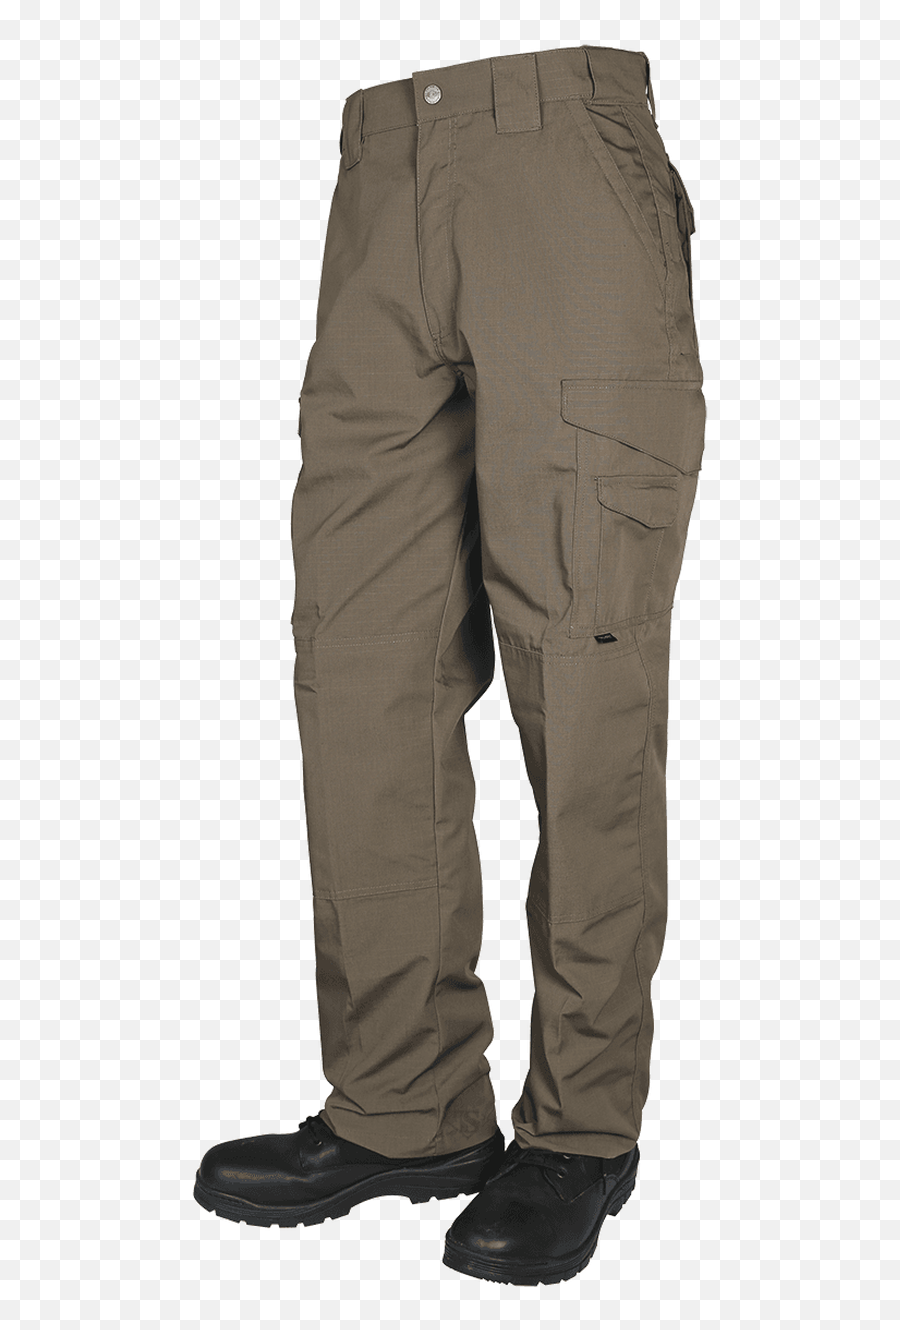 Tru - Spec Ts1042 247 Series Menu0027s Original Tactical Pants Tru Spec Tactical Pants Khaki Png,Icon Field Armor Vest Size Chart